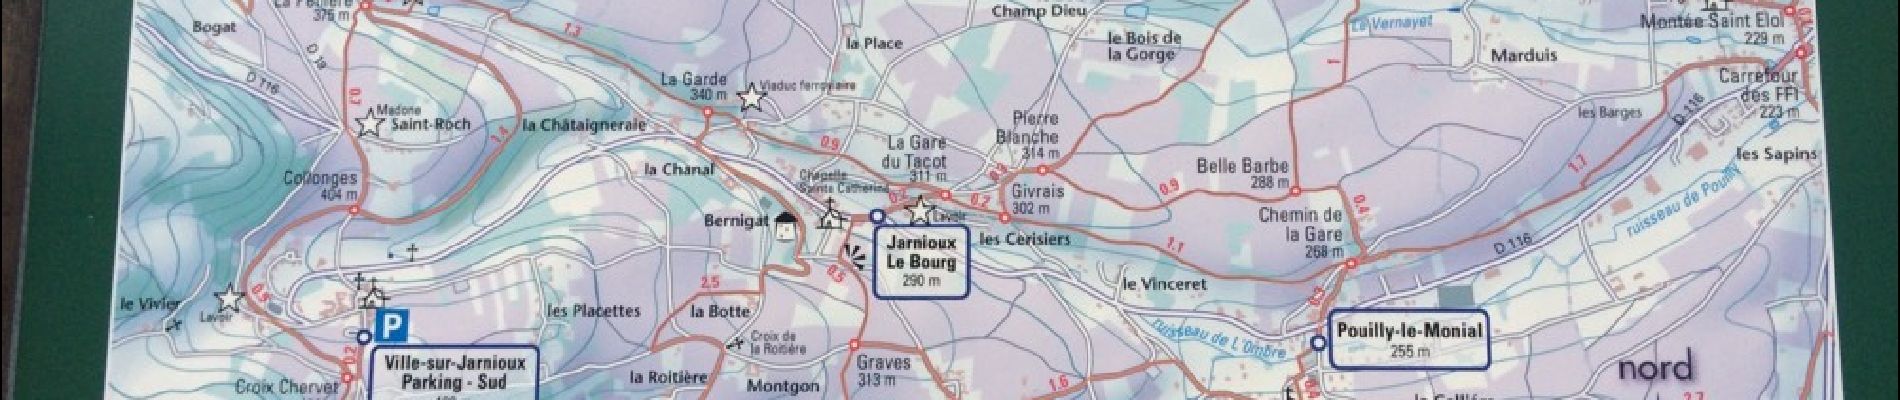 Tour Wandern Porte des Pierres Dorées - Jarnioux 10.4 km - Photo